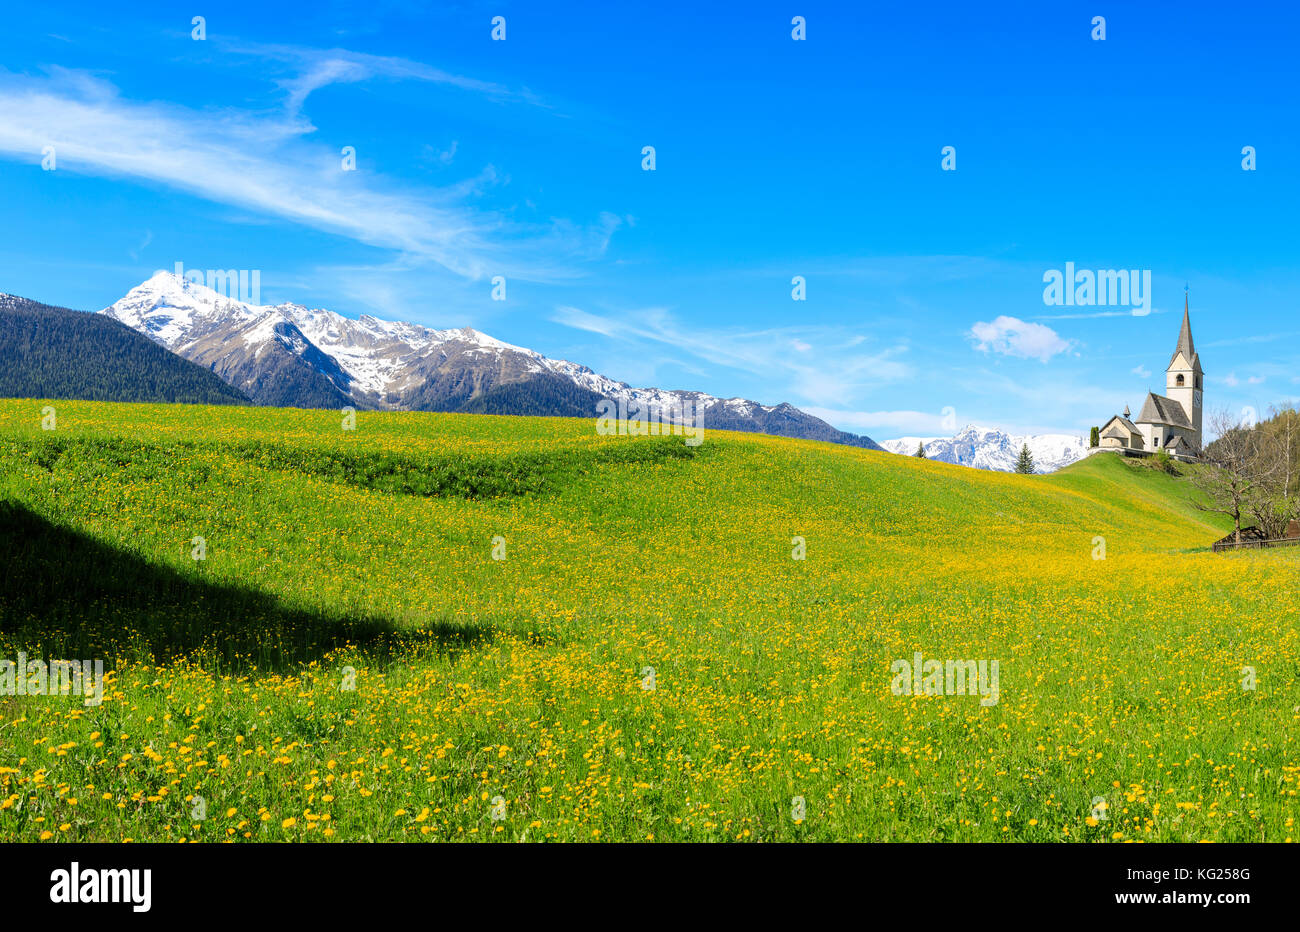 Panoramique de la vallée couverte de fleurs jaunes, Schmitten, District d'Albula, Canton de Graubunden, Suisse, Europe Banque D'Images